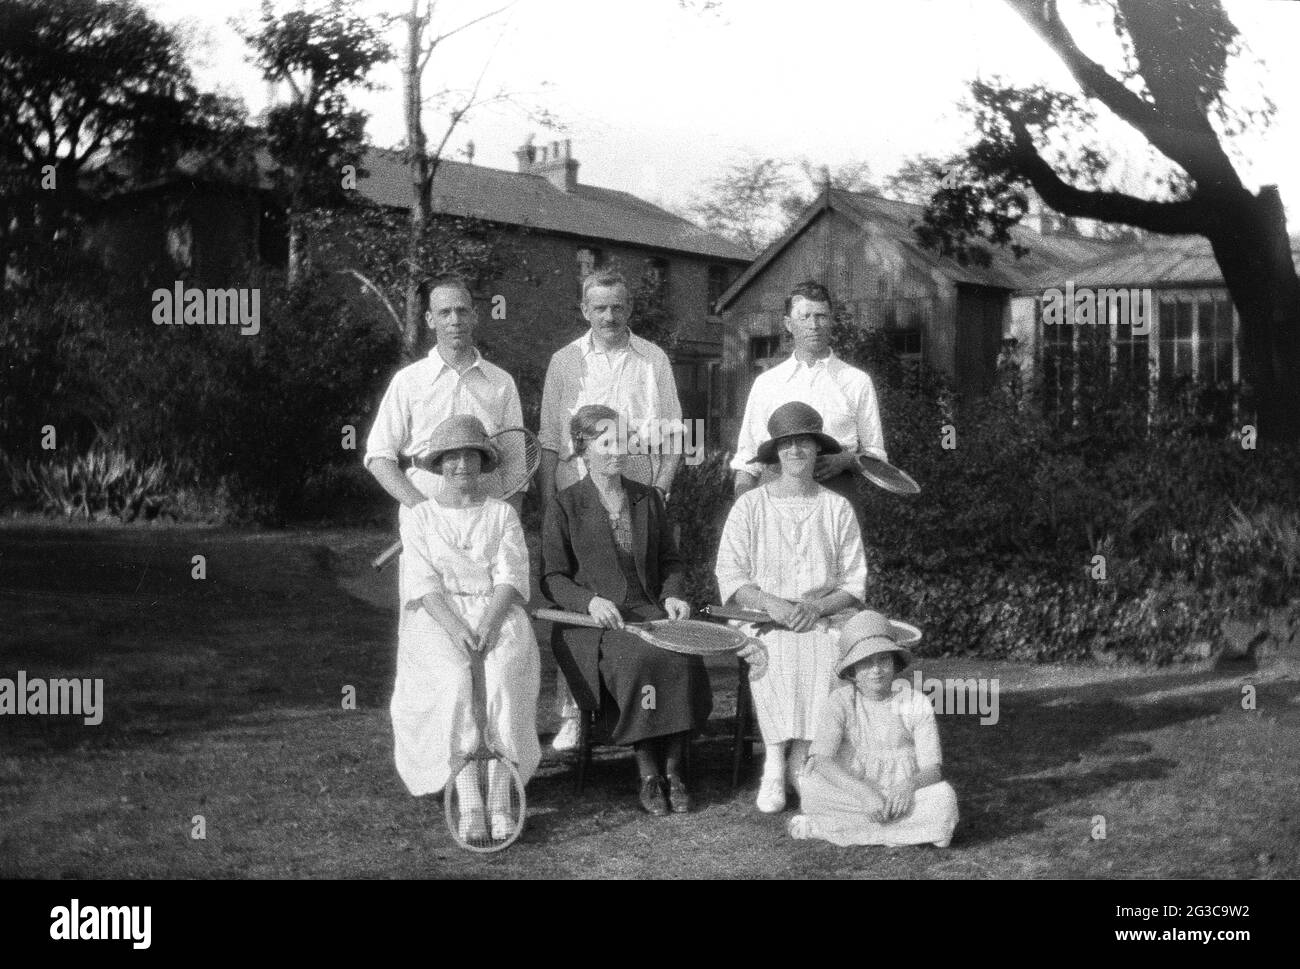 1930s, historisch, Männer und Frauen Tennisspieler, Sozialspieler, in den Tennis-Outfits der Zeit, lange Röcke, mit ihren Holzschlägern, sitzen zusammen in einem Garten für ein Foto, in der Regel formell, wie es die Norm in dieser Zeit war, England, Großbritannien. Stockfoto